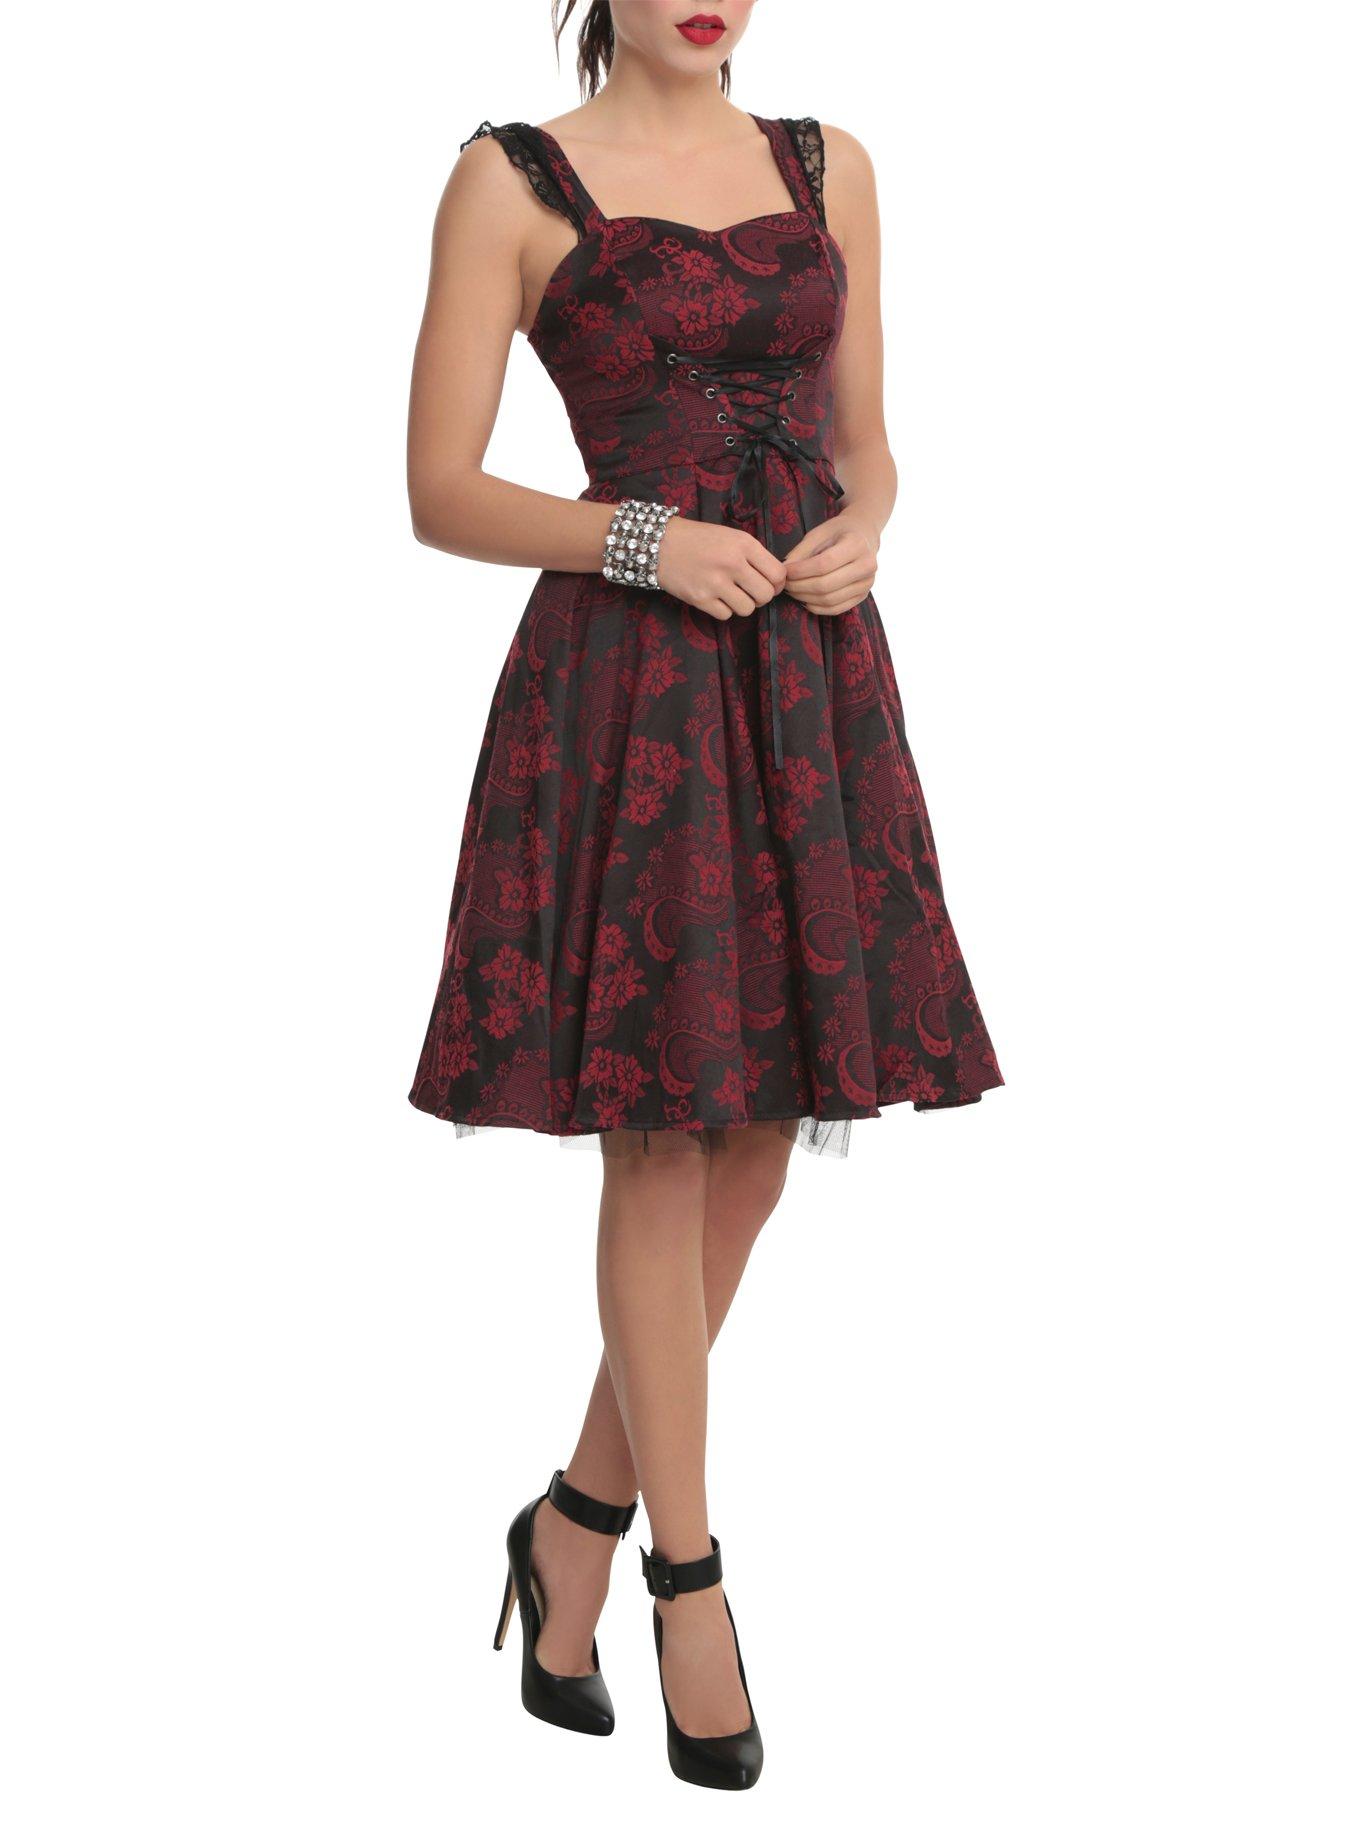 Higgins åndelig Centralisere Red and Black Brocade Lace-Up Dress | Hot Topic